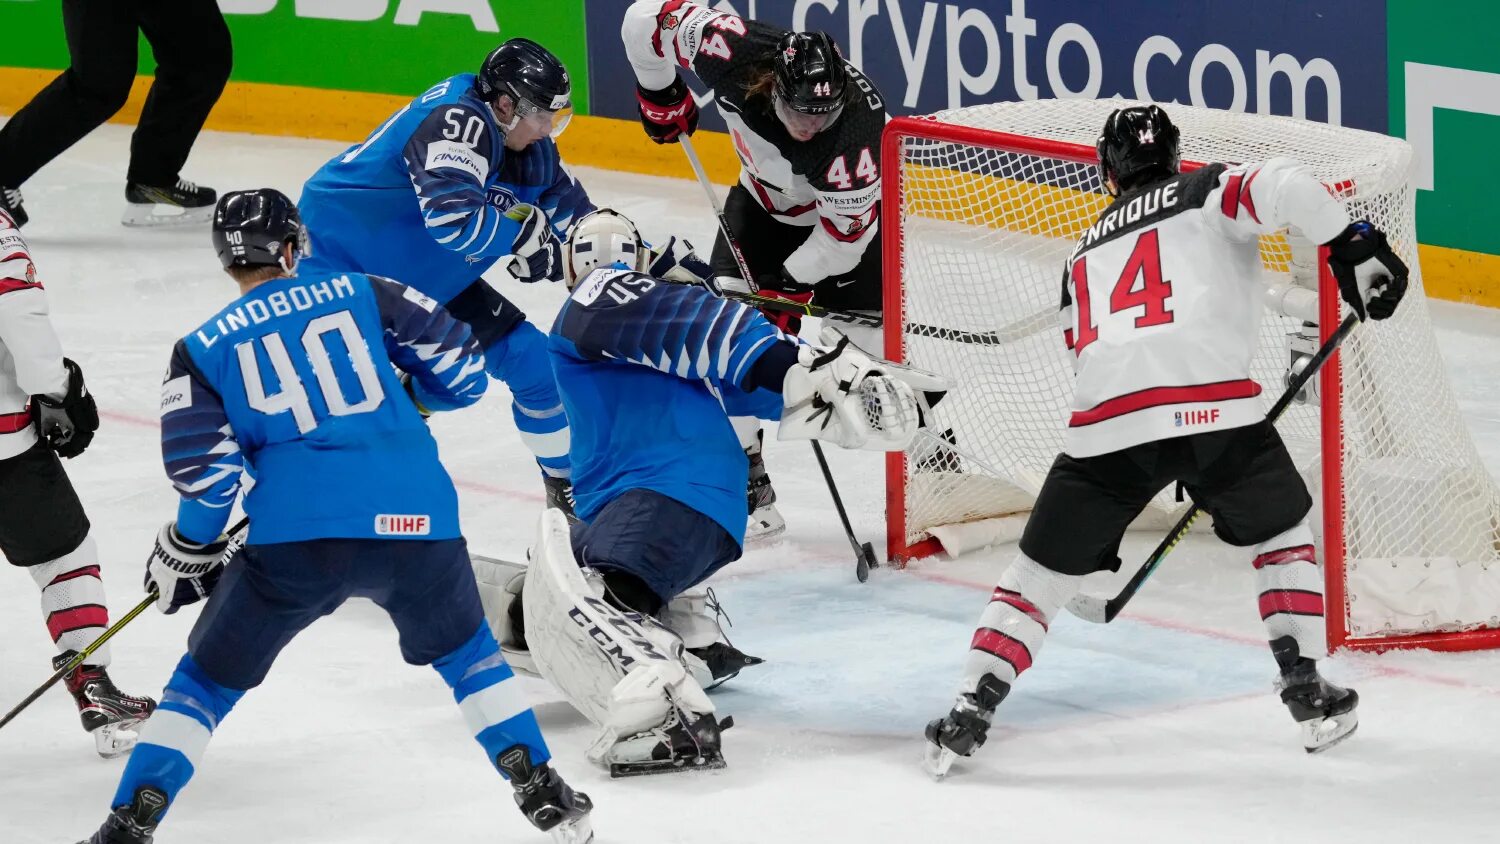 ЧМ по хоккею 2021 Канада Финляндия. ЧМ 2021 по хоккею финал Канада Финляндия. Хоккей сборная Финляндии 2021.